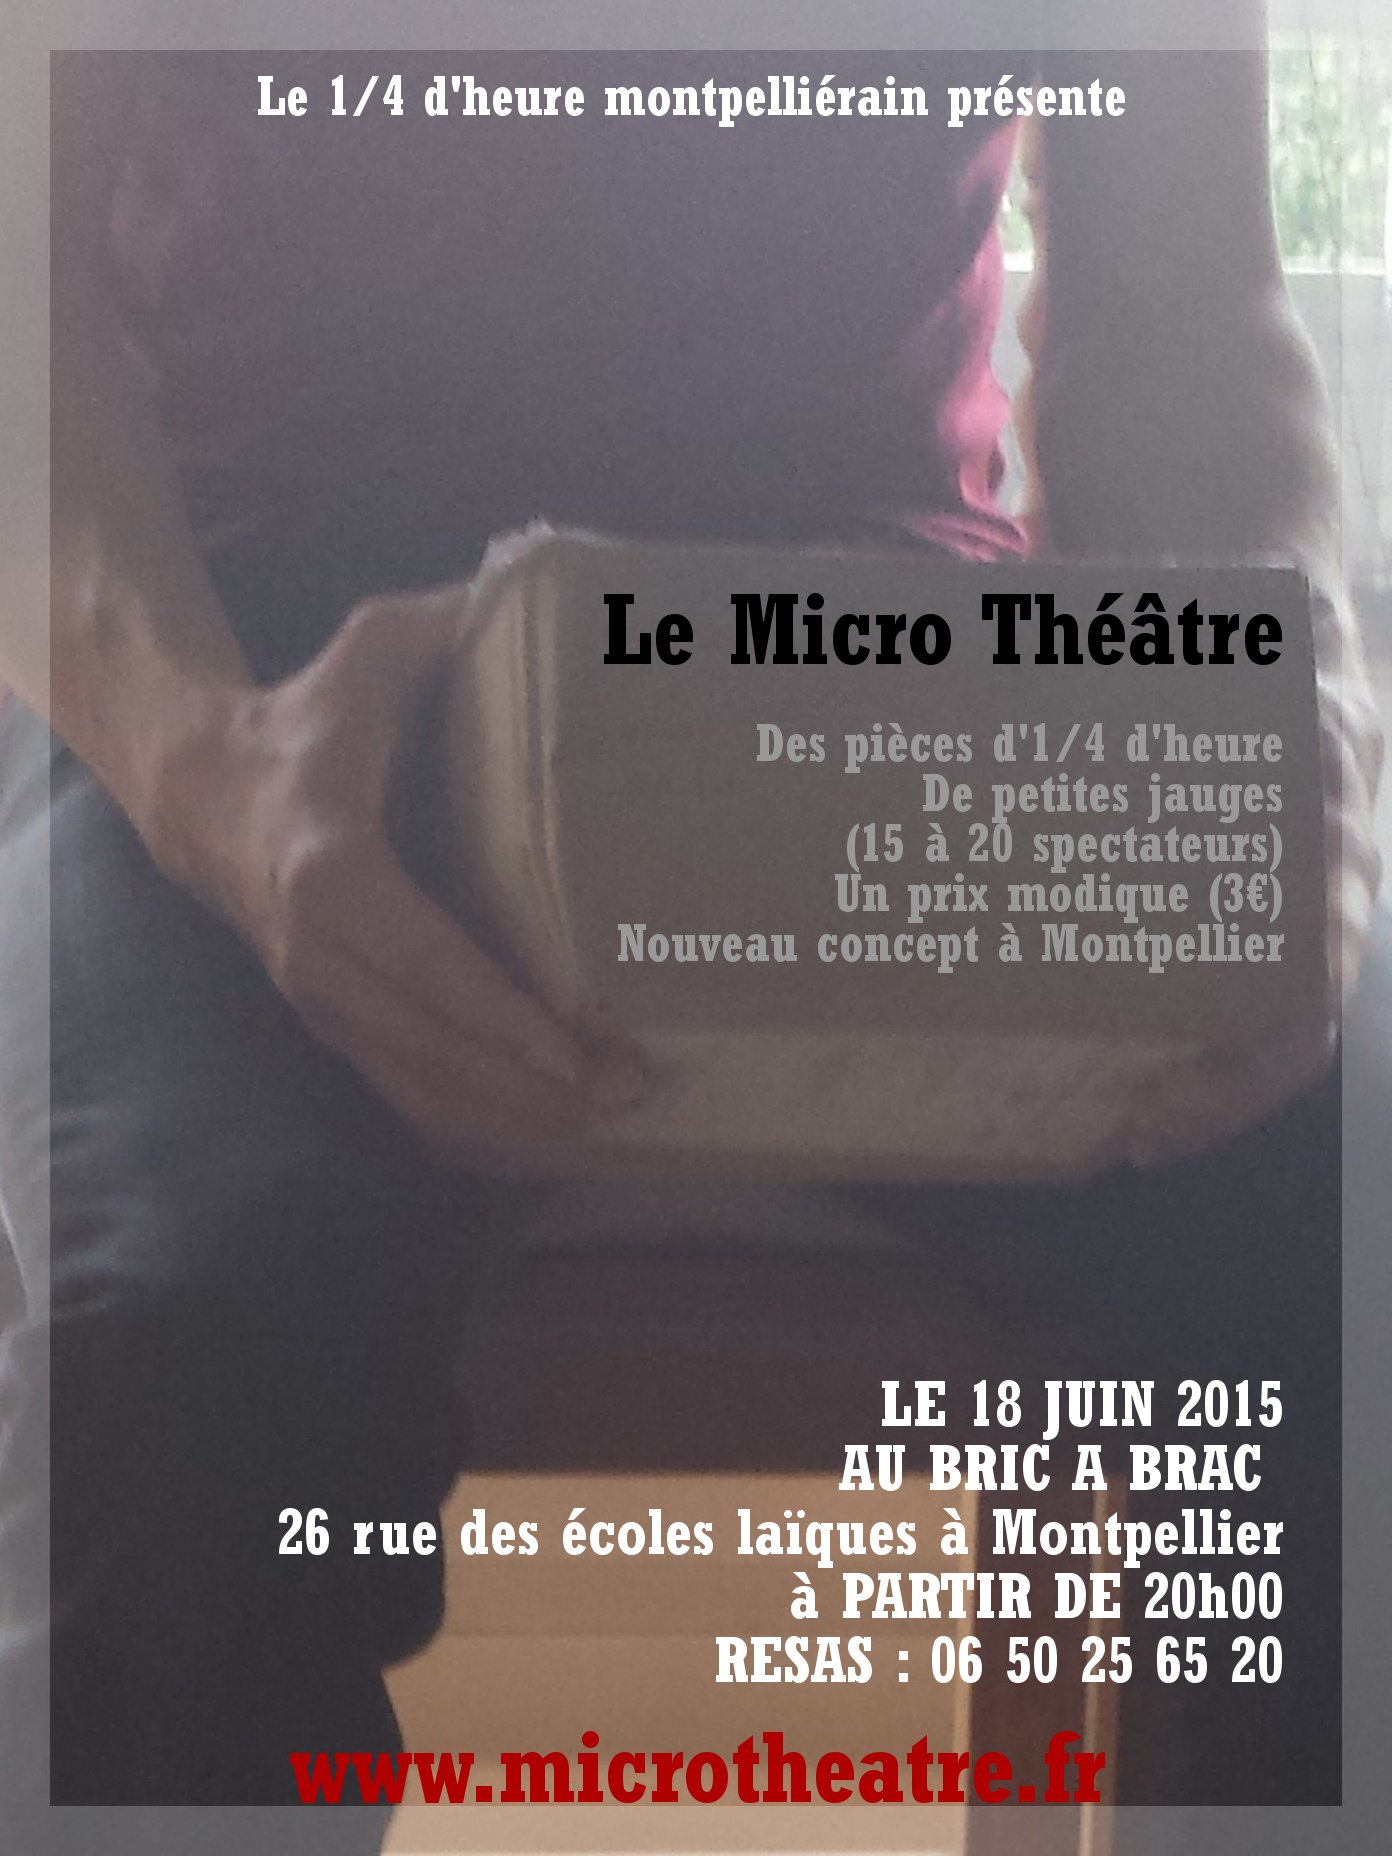 Affiche de la dernière soirée de micro-théâtre à Montpellier